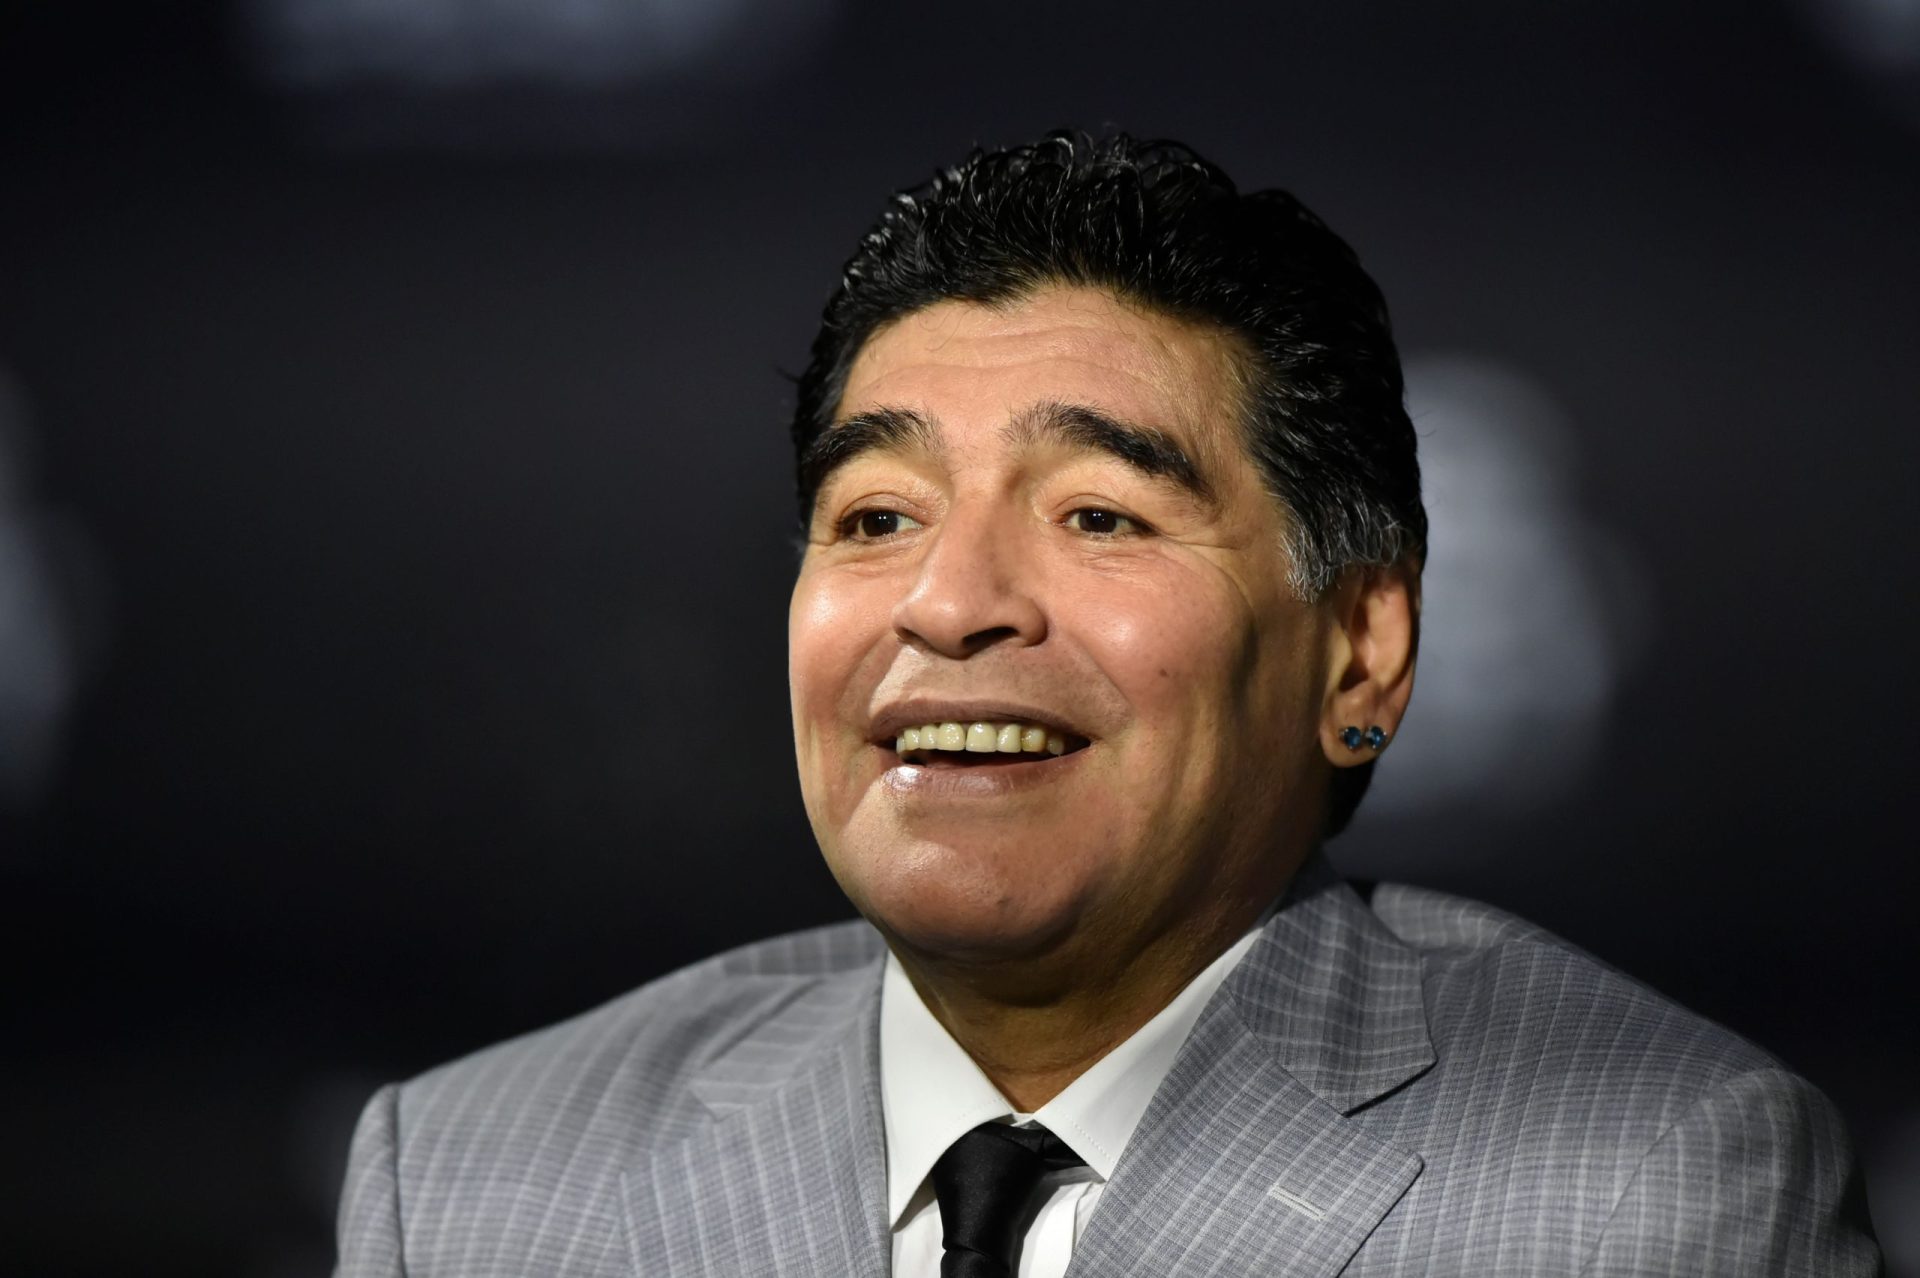 Advogado de Maradona quer investigação “até às últimas consequências” e fala em “idiotice criminosa”